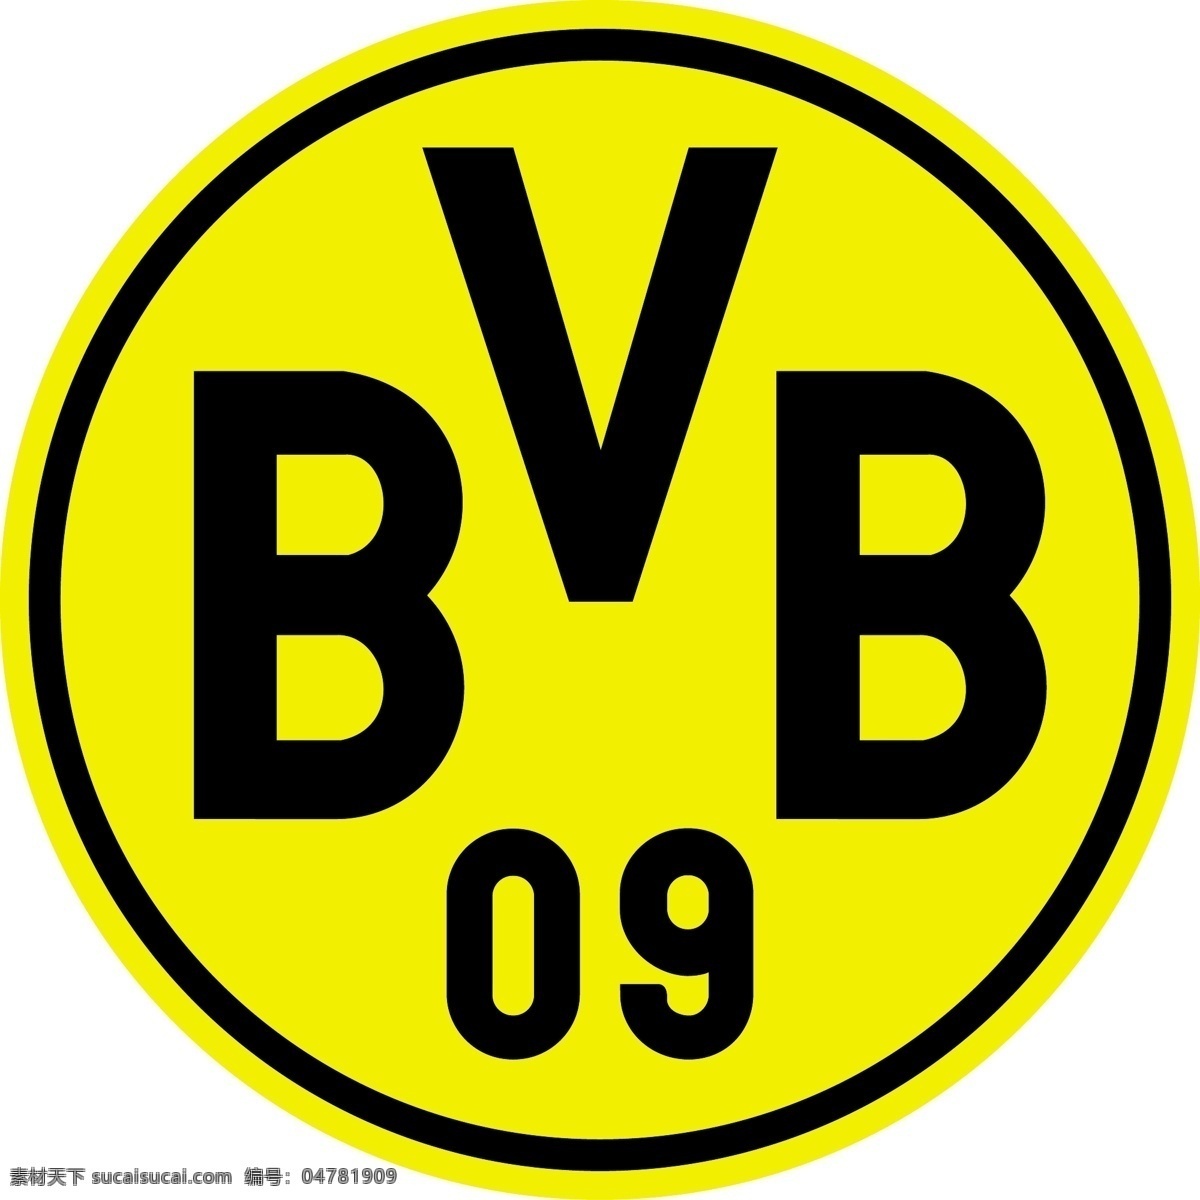 多特蒙德 足球 俱乐部 徽标 普鲁士 德甲 德国杯 超级杯 欧冠 欧联 欧足联 联赛 杯赛 德国 logo设计